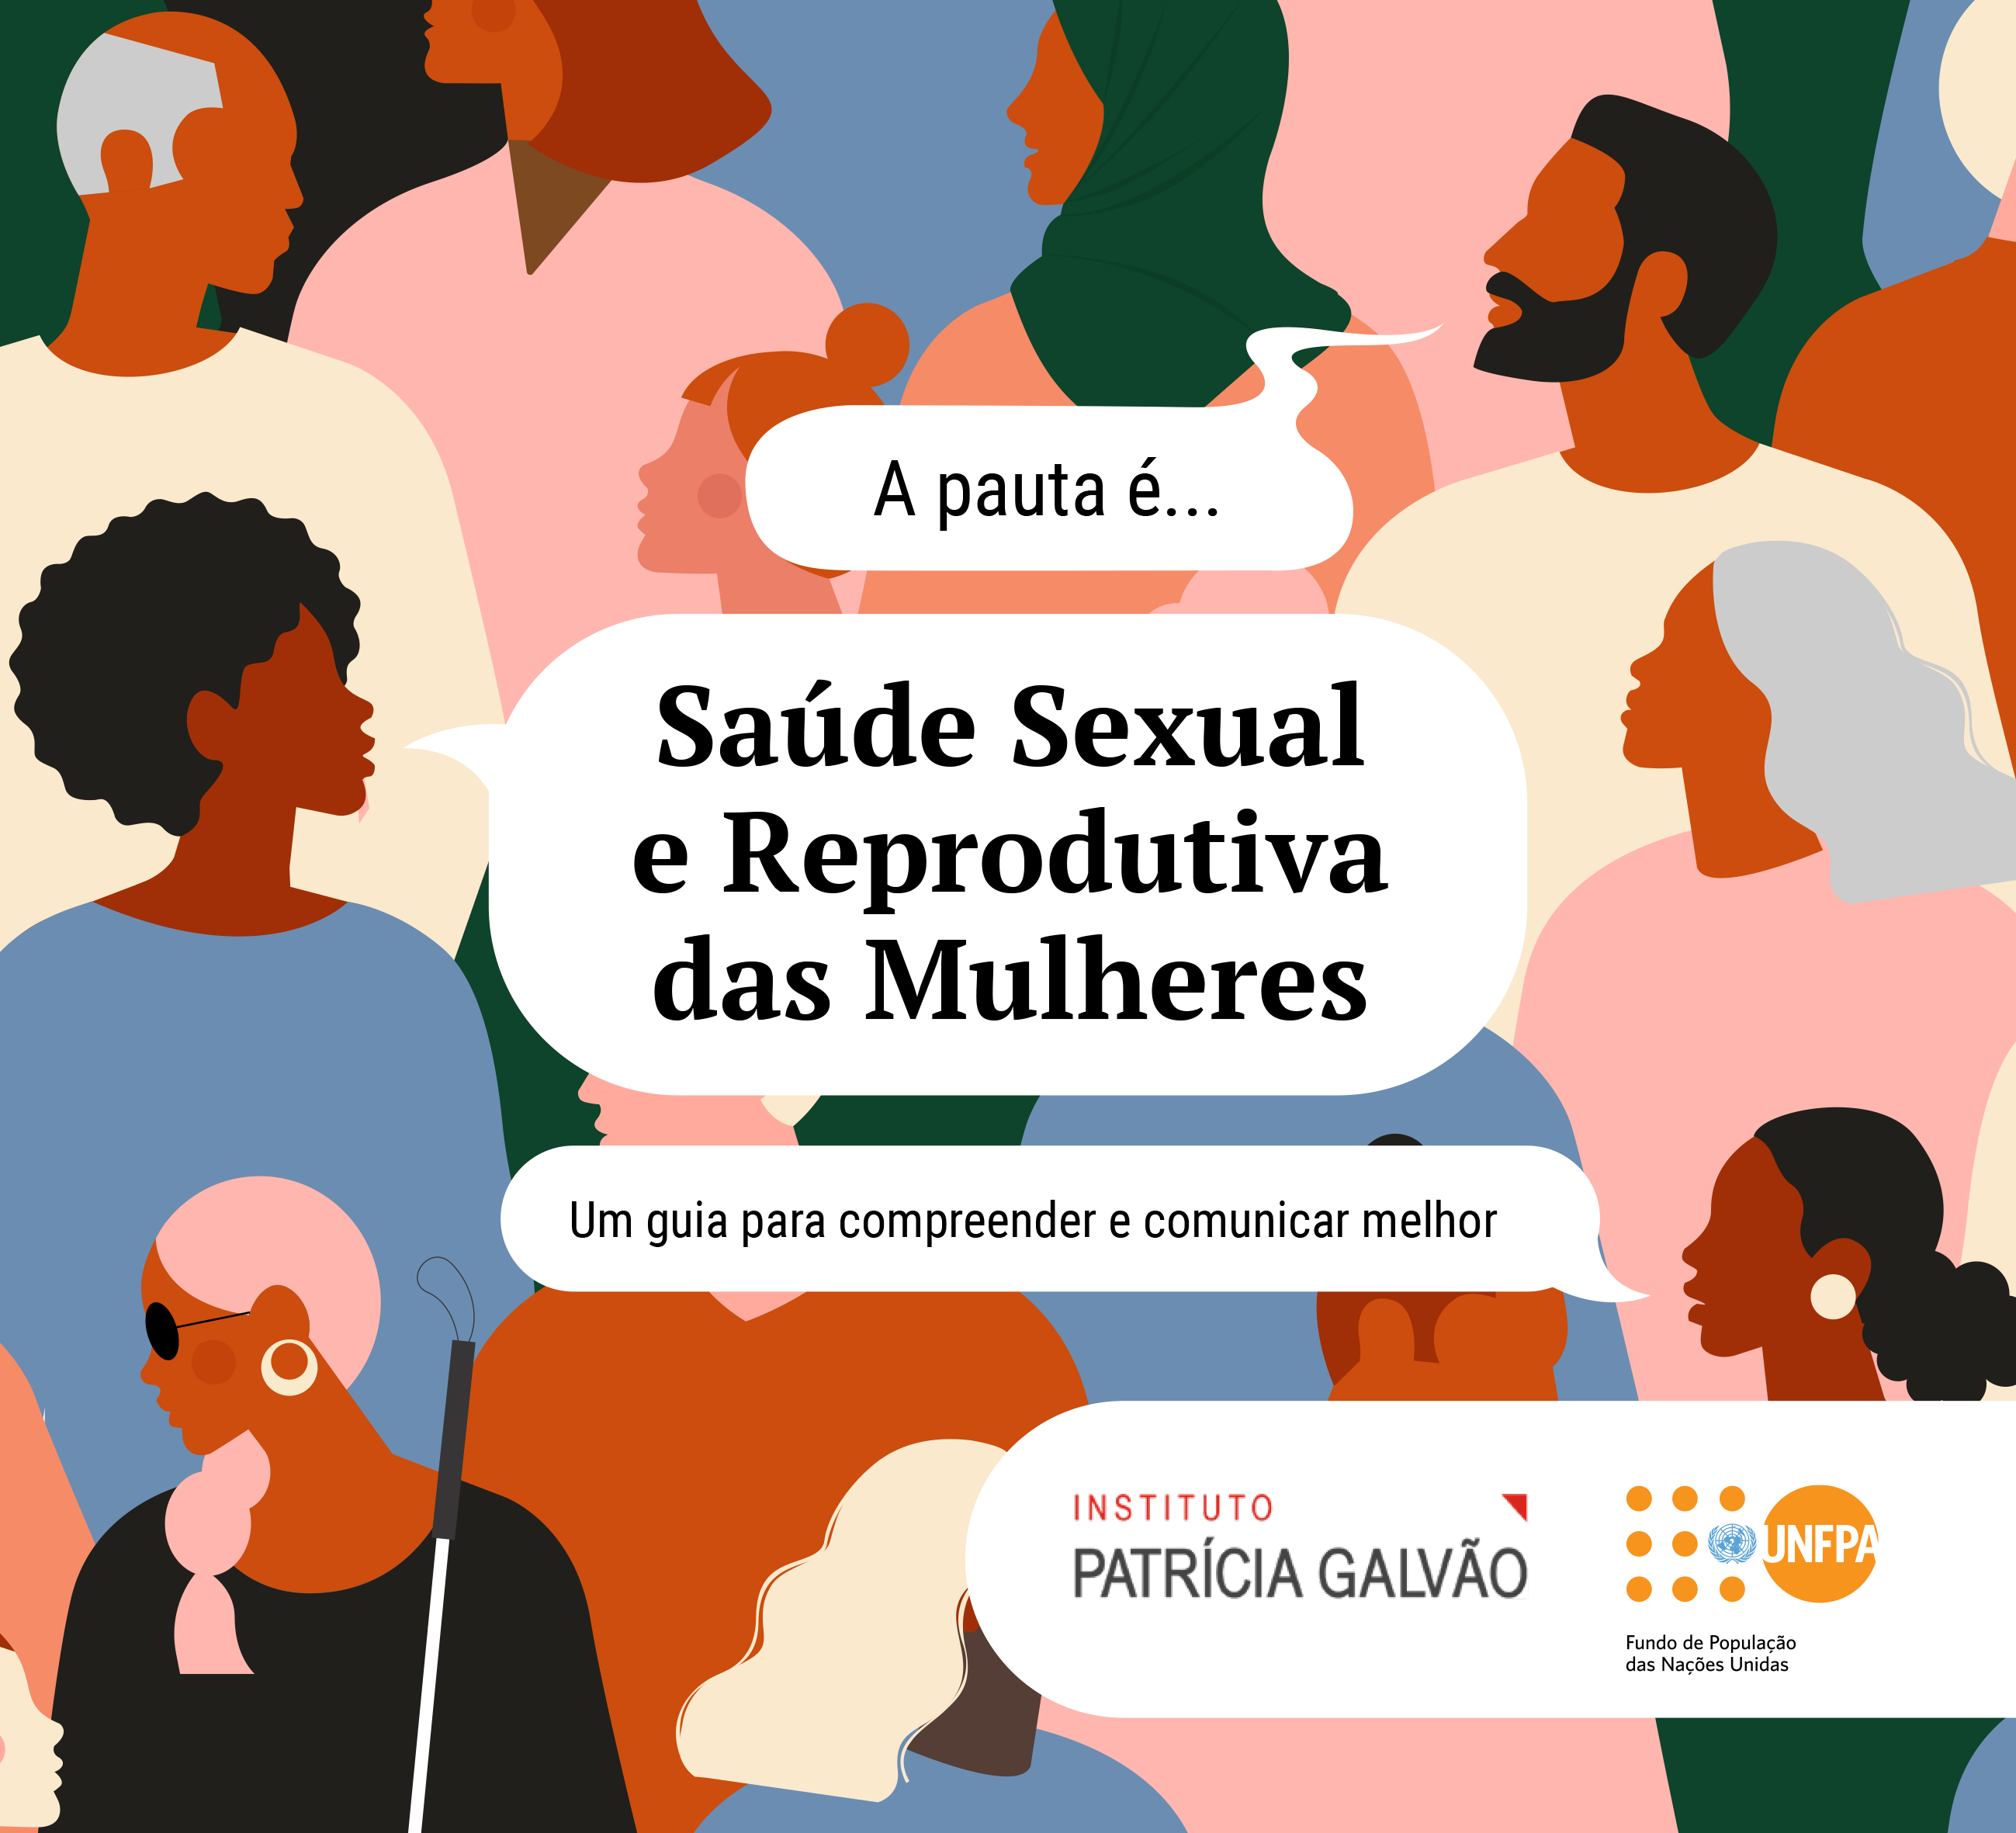 UNFPA_Instituto Patrícia Galvão_2021_Guia A pauta é saude sexual e reprodutiva das mulheres-1